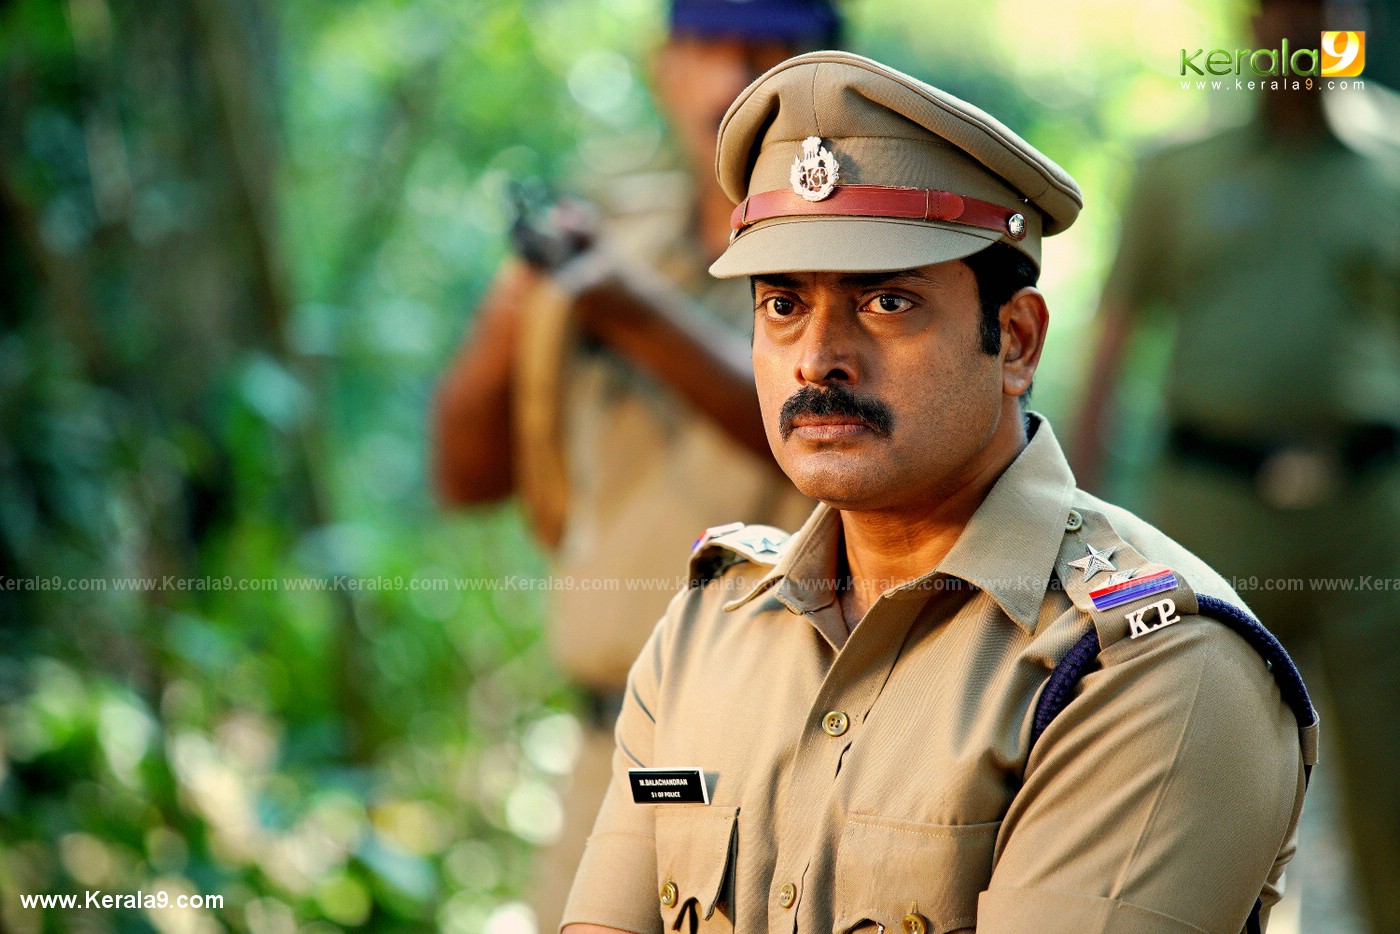 madura raja movie stills 14 - Kerala9.com